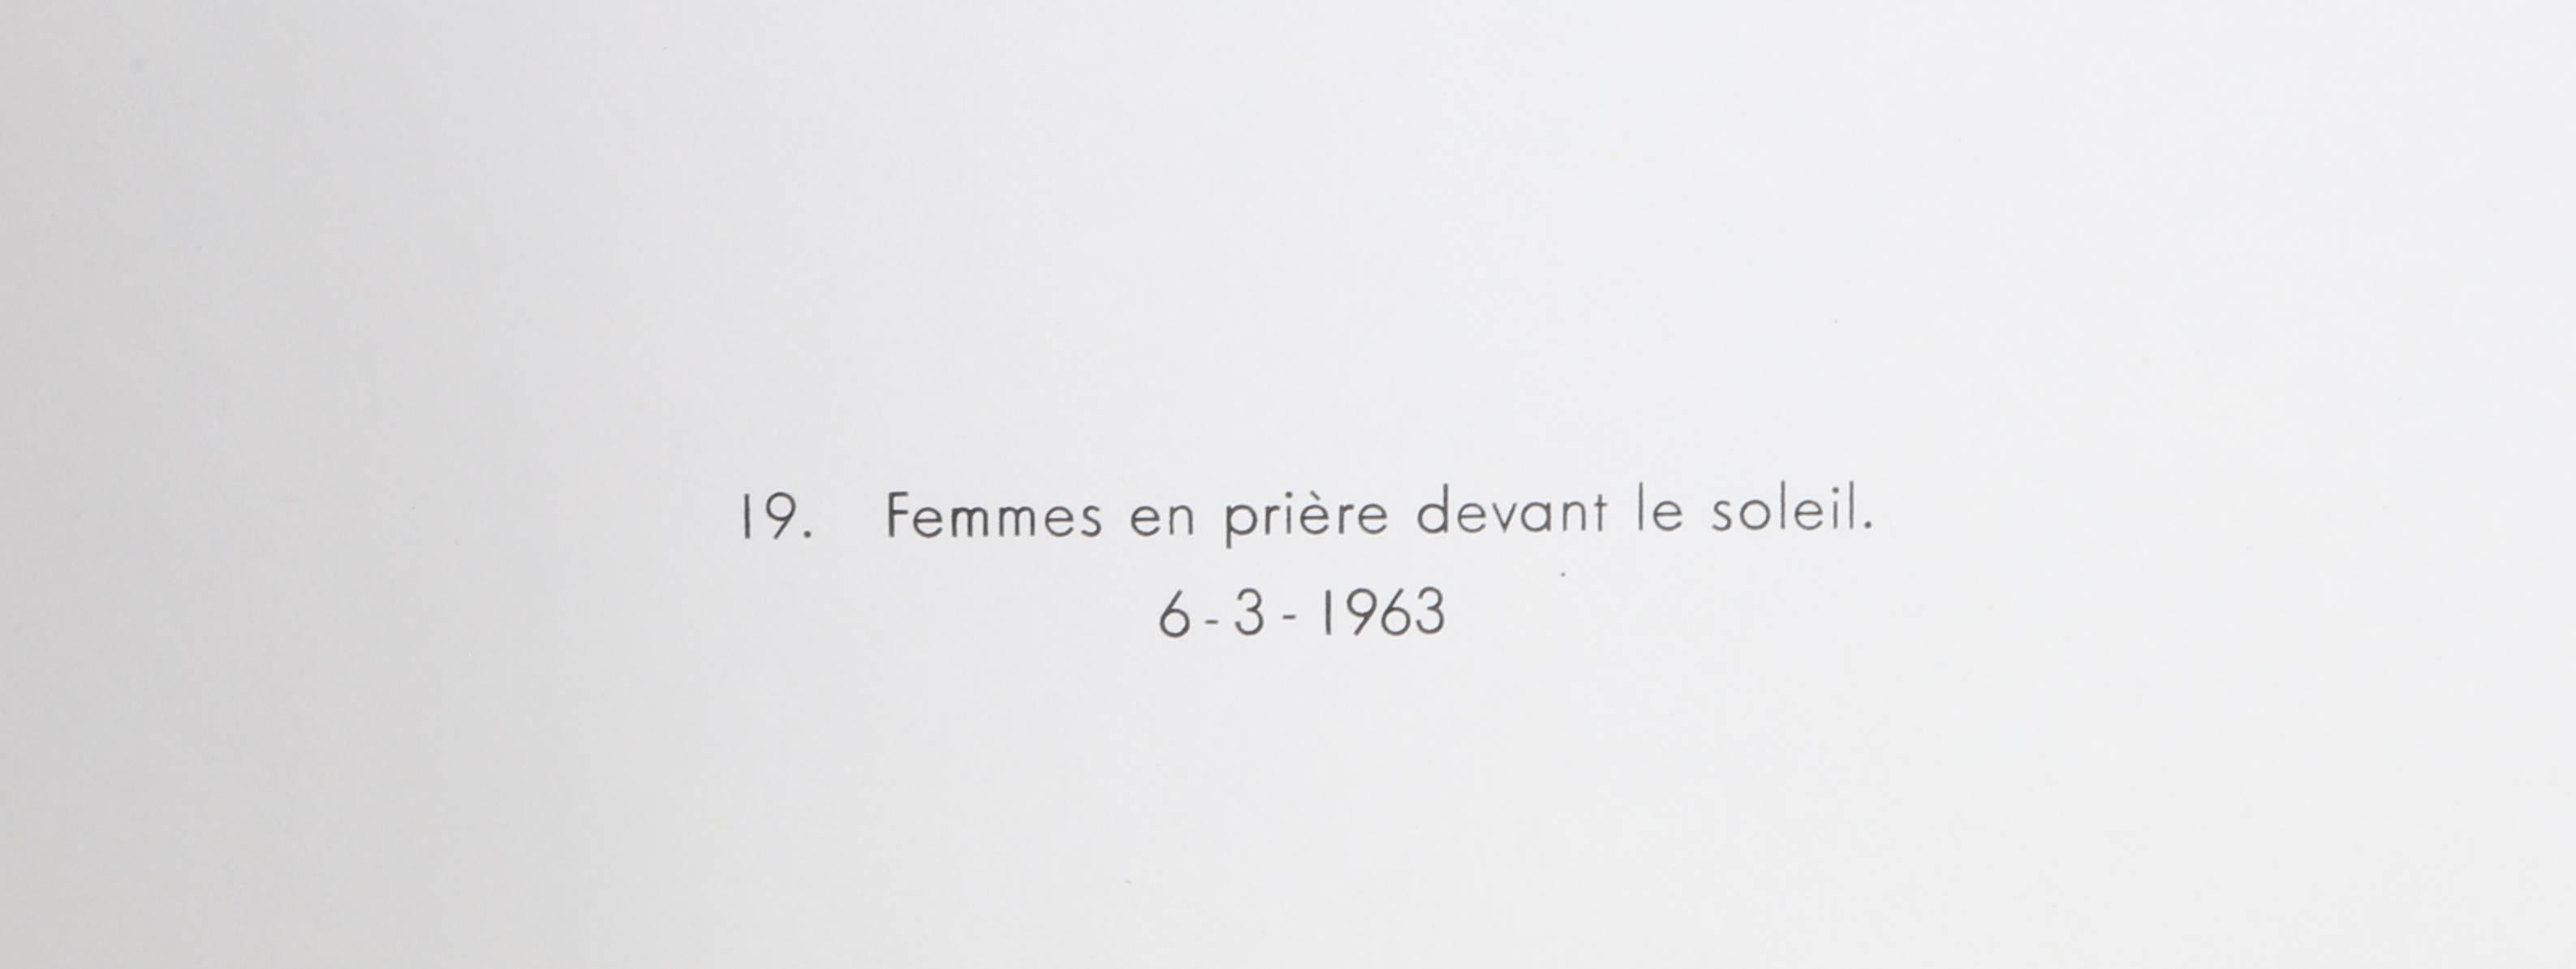 Cartones 19: Femmes en priere devant le soleil, von Joan Miro – Print von Joan Miró